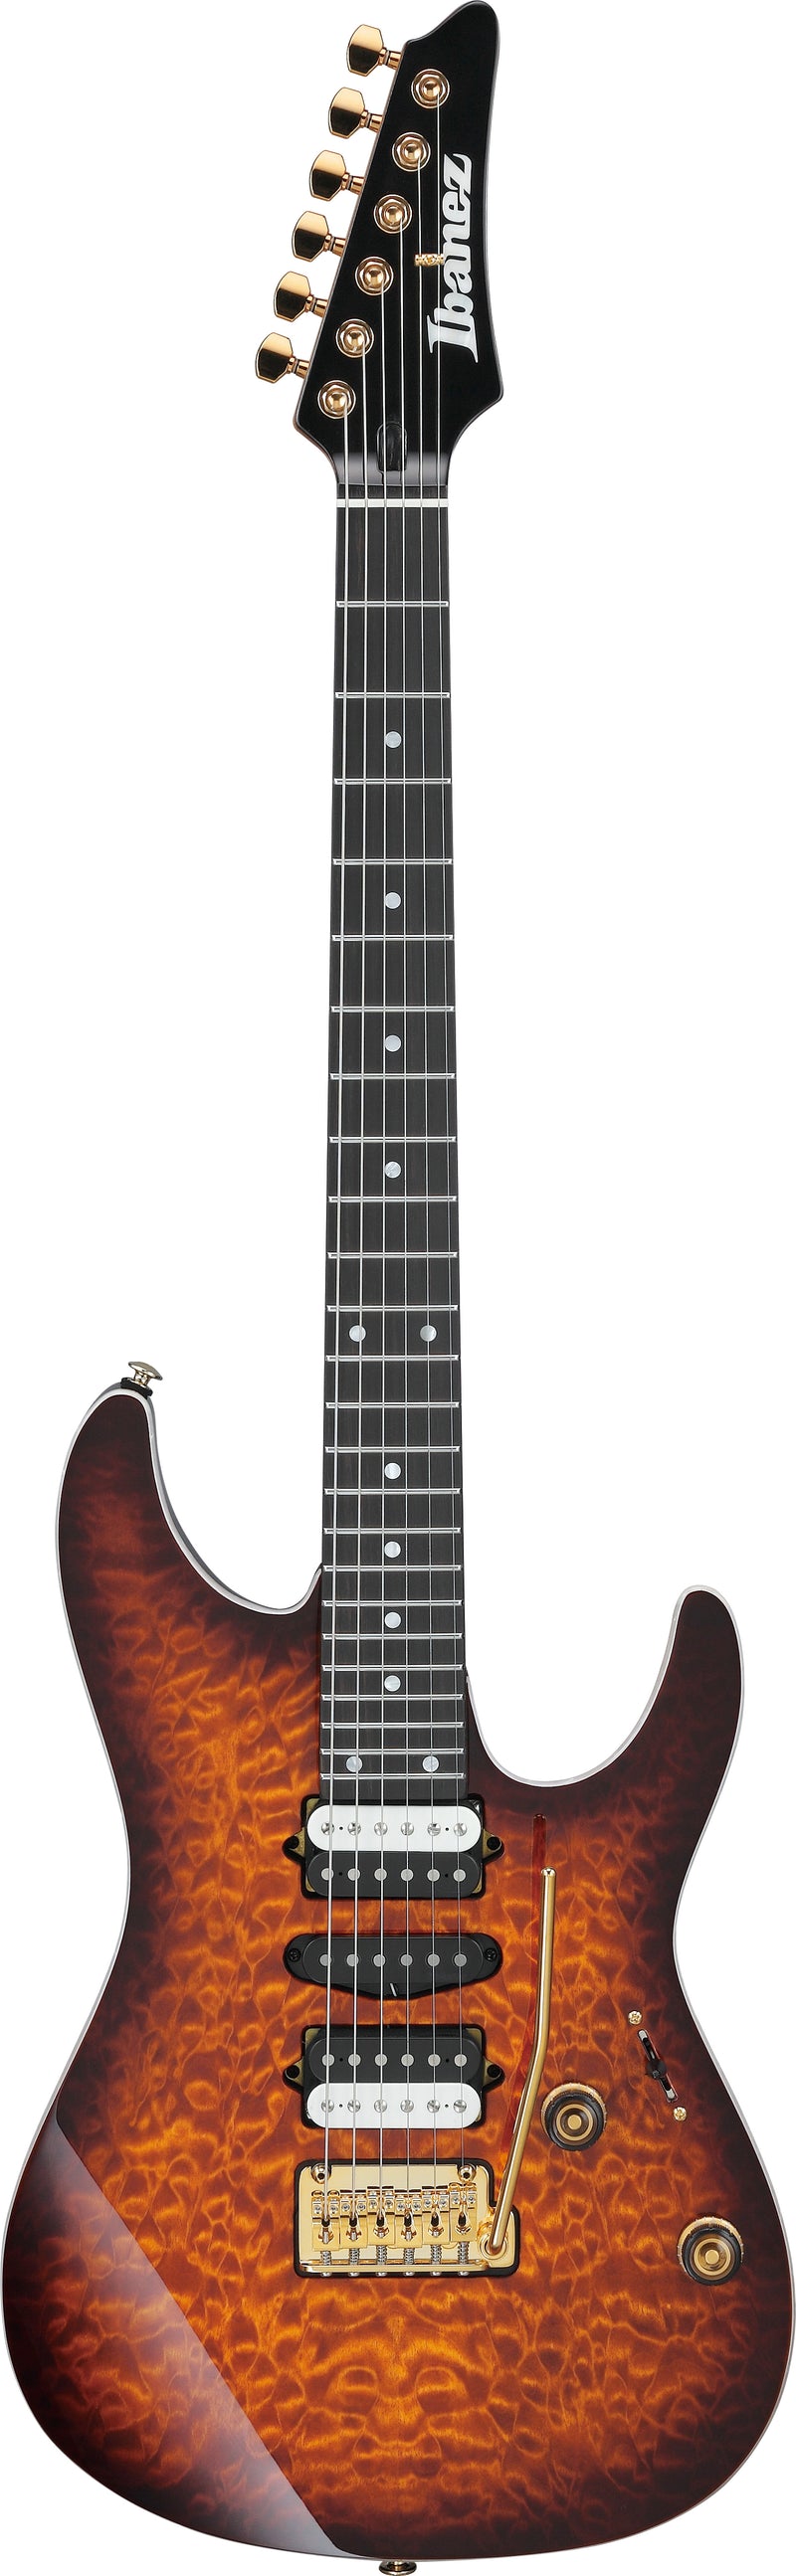 Ibanez AZ Premium Electric Guitar (Dragon Eye Burst)